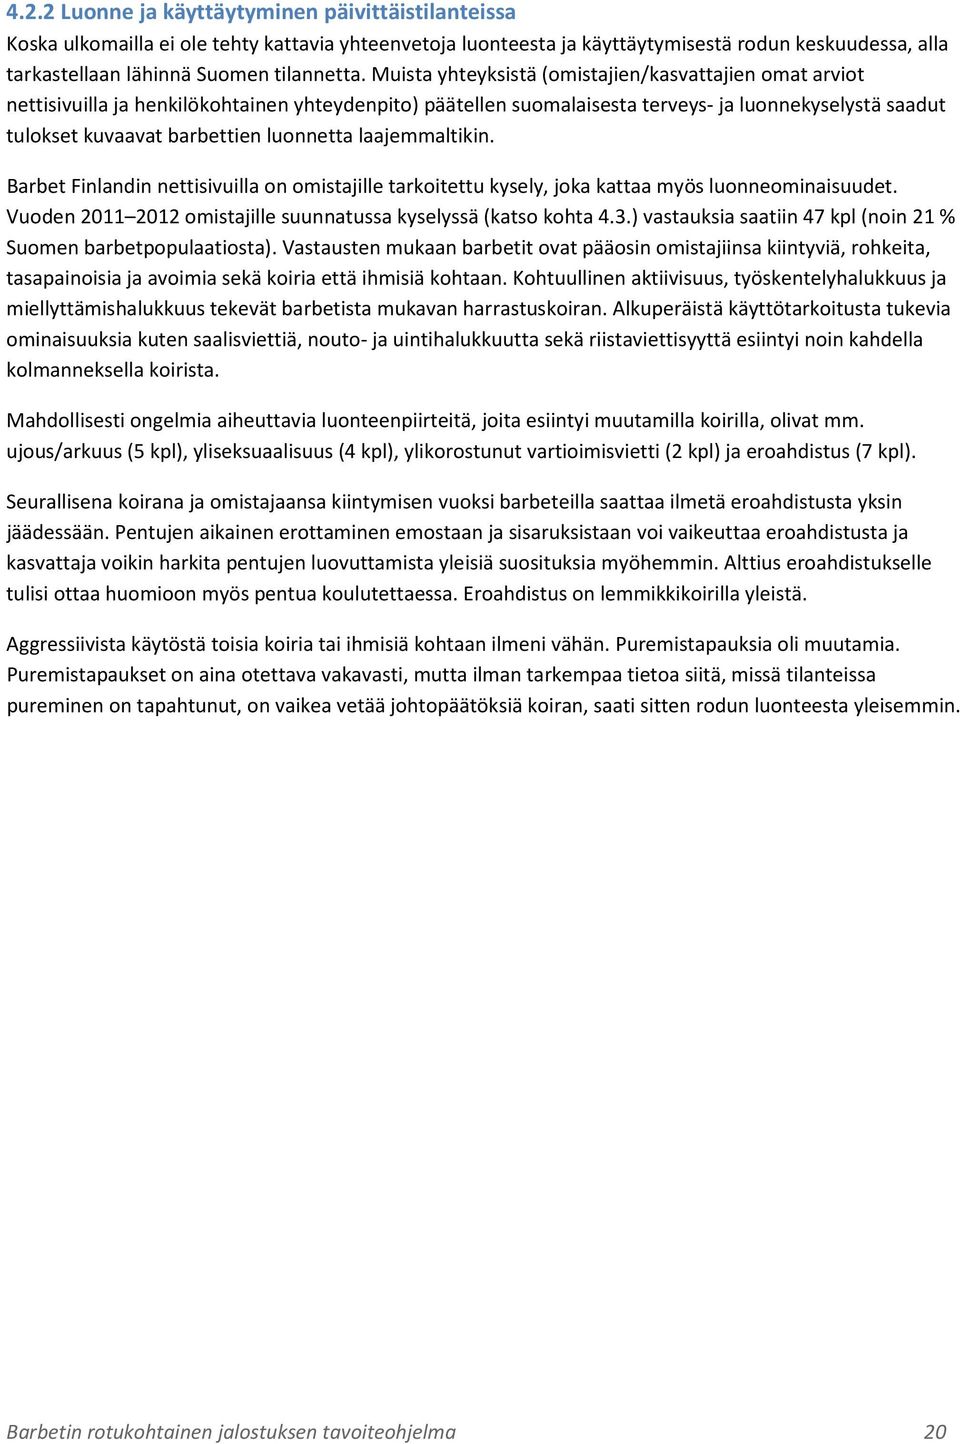 luonnetta laajemmaltikin. Barbet Finlandin nettisivuilla on omistajille tarkoitettu kysely, joka kattaa myös luonneominaisuudet. Vuoden 2011 2012 omistajille suunnatussa kyselyssä (katso kohta 4.3.